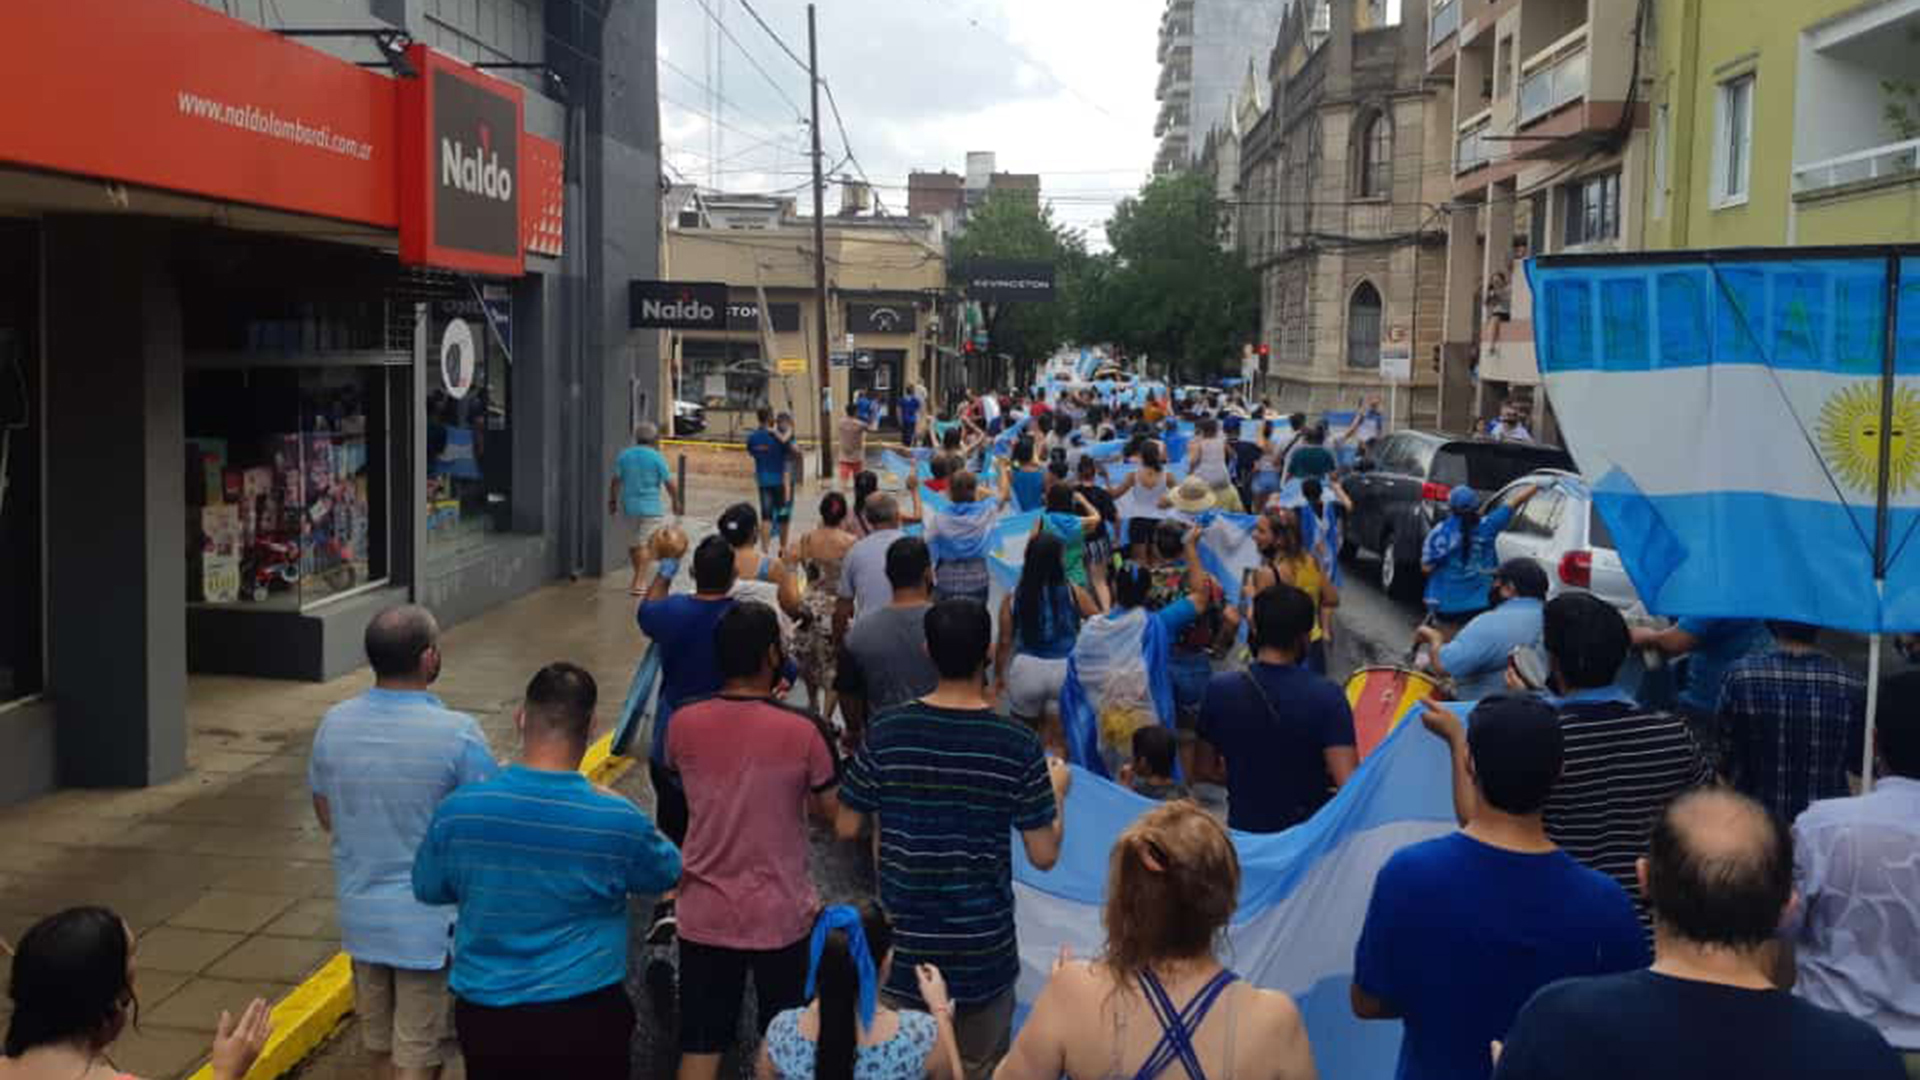 Adultos, jóvenes y chicos flamenado la bandera argentina hicieron oír su postura pro-vida